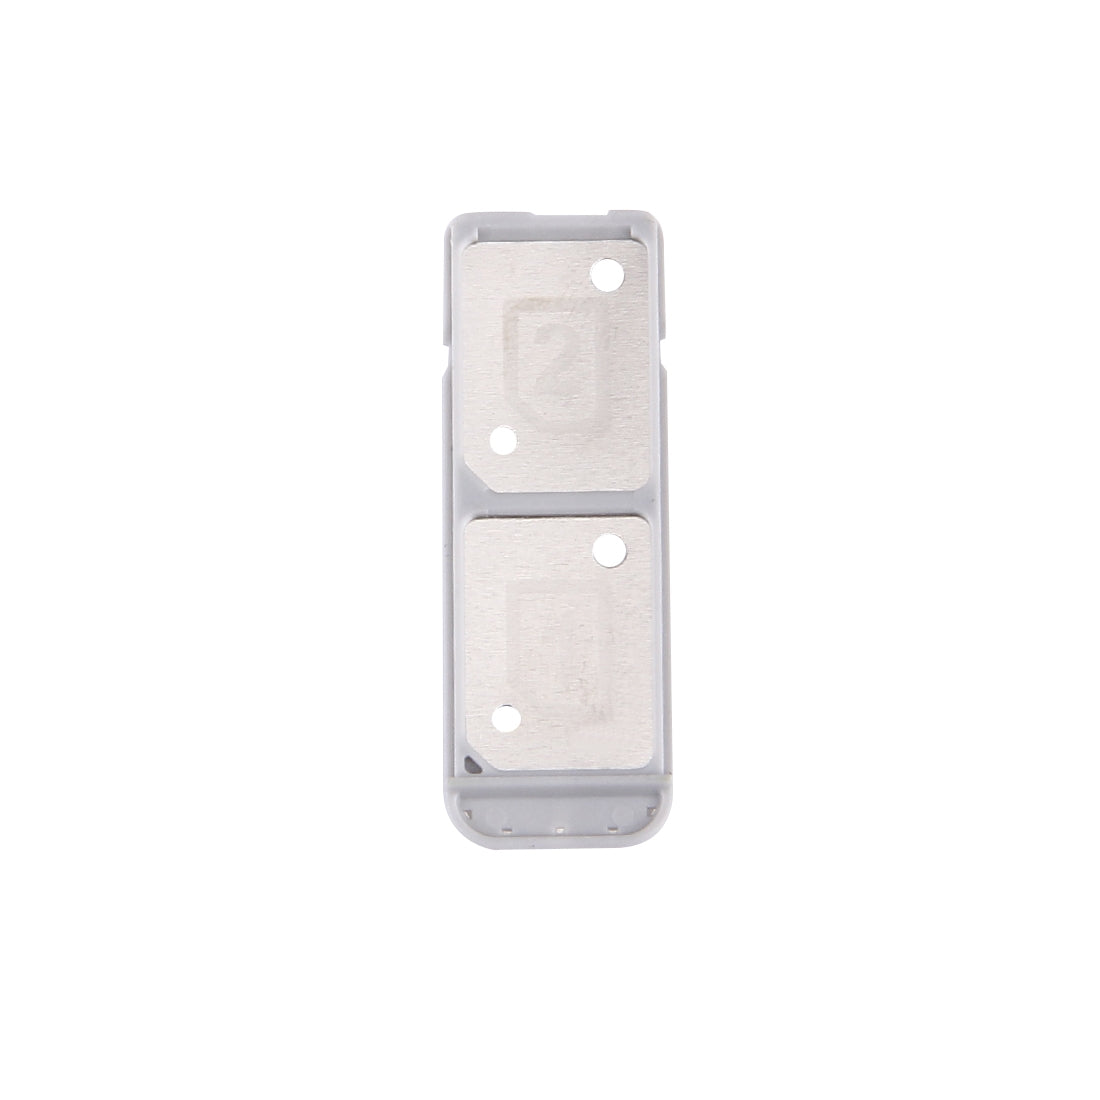 Dual SIM SIM Holder Tray Sony Xperia XA